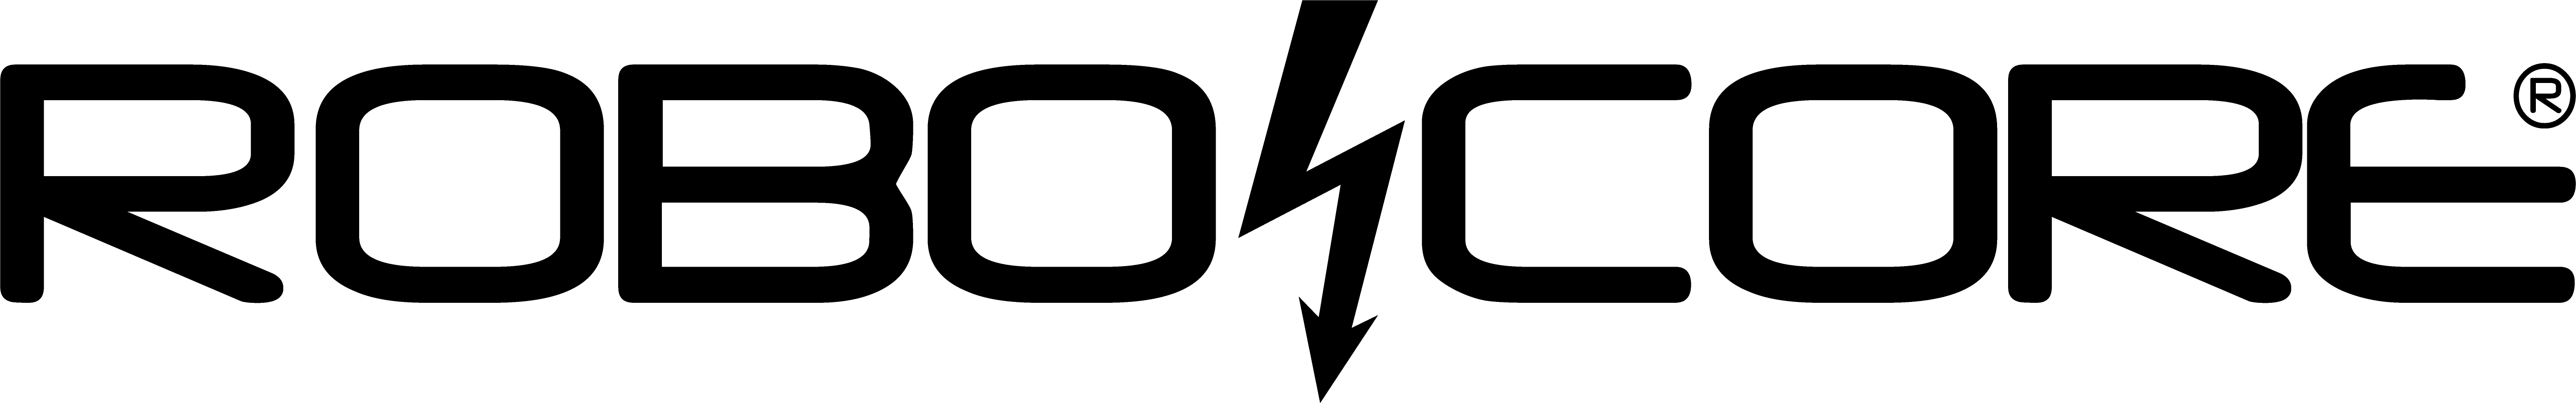 Logo - Robocore